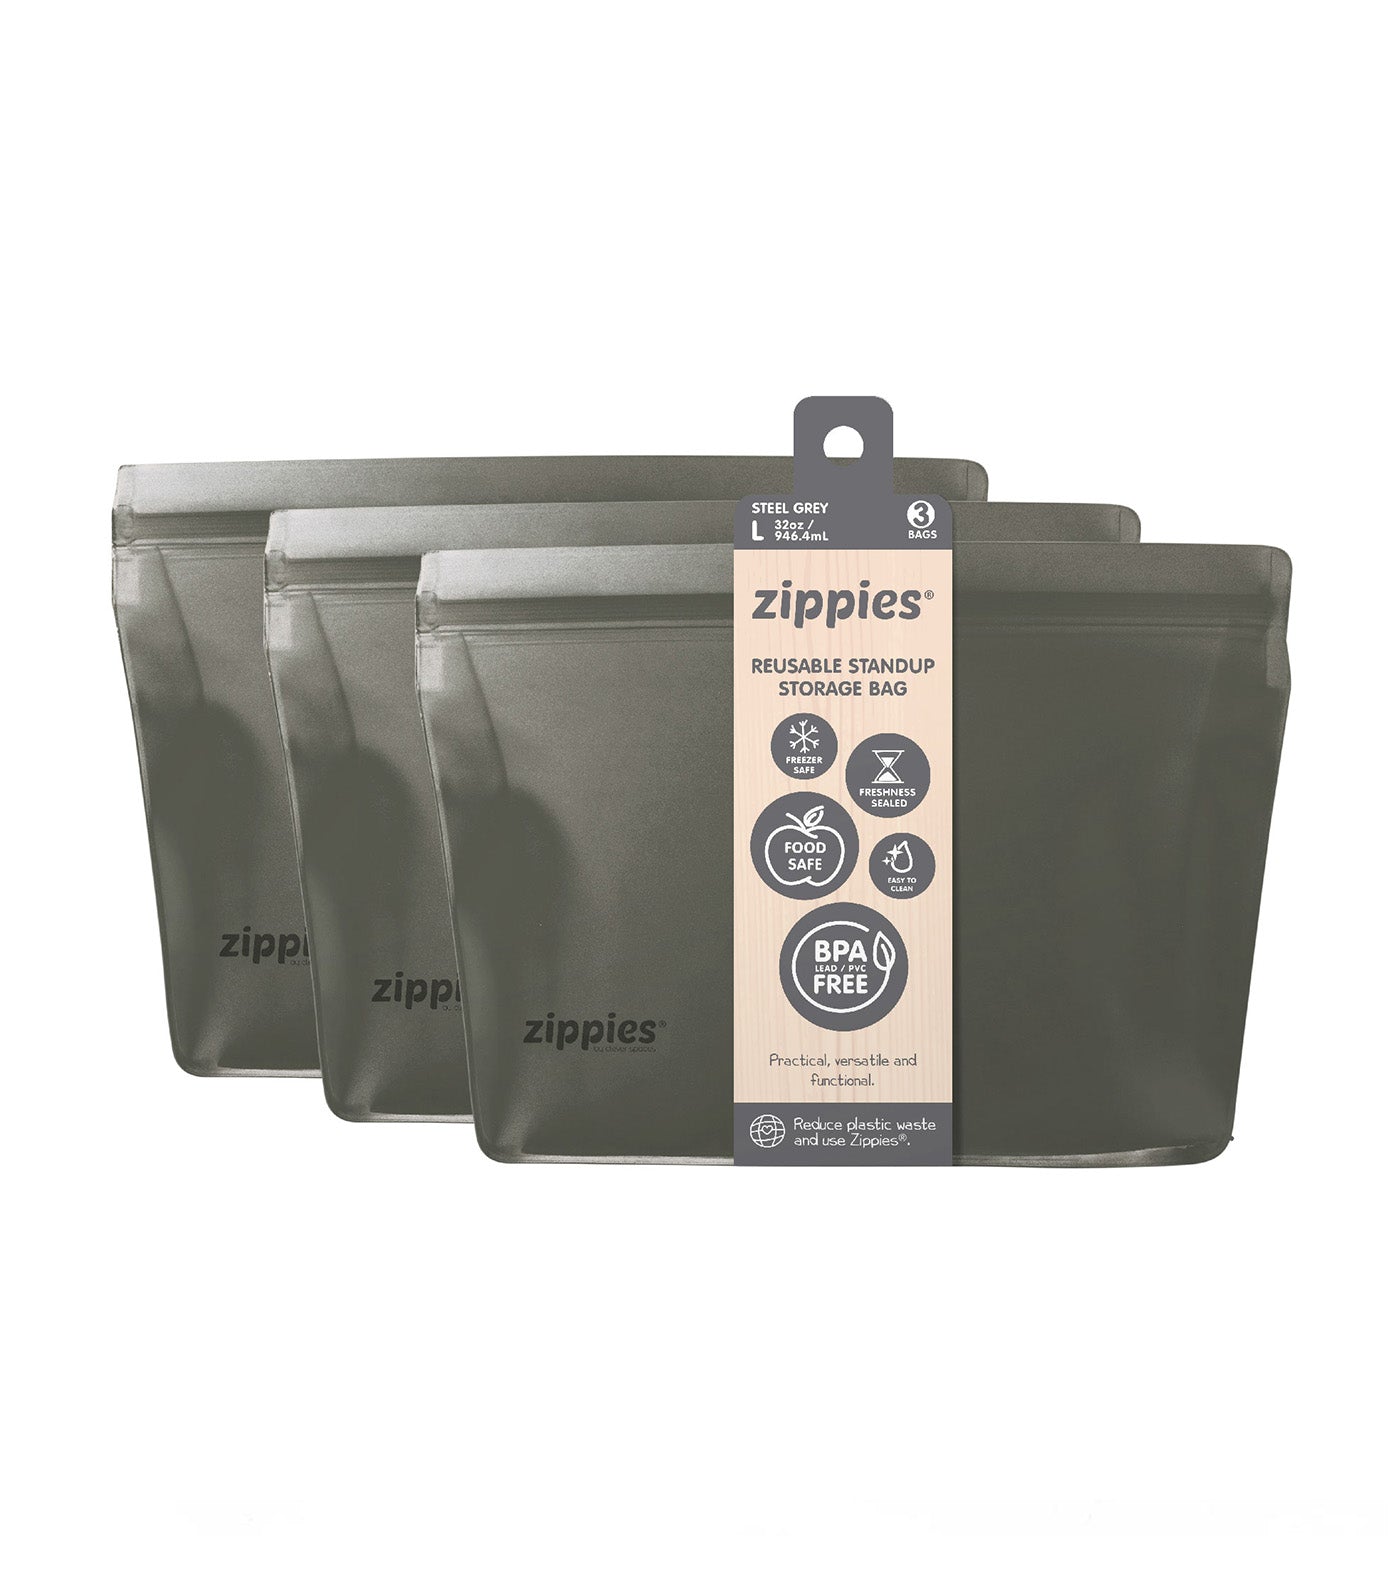 3-Piece Reusable Standup Storage Bags - Steel Grey